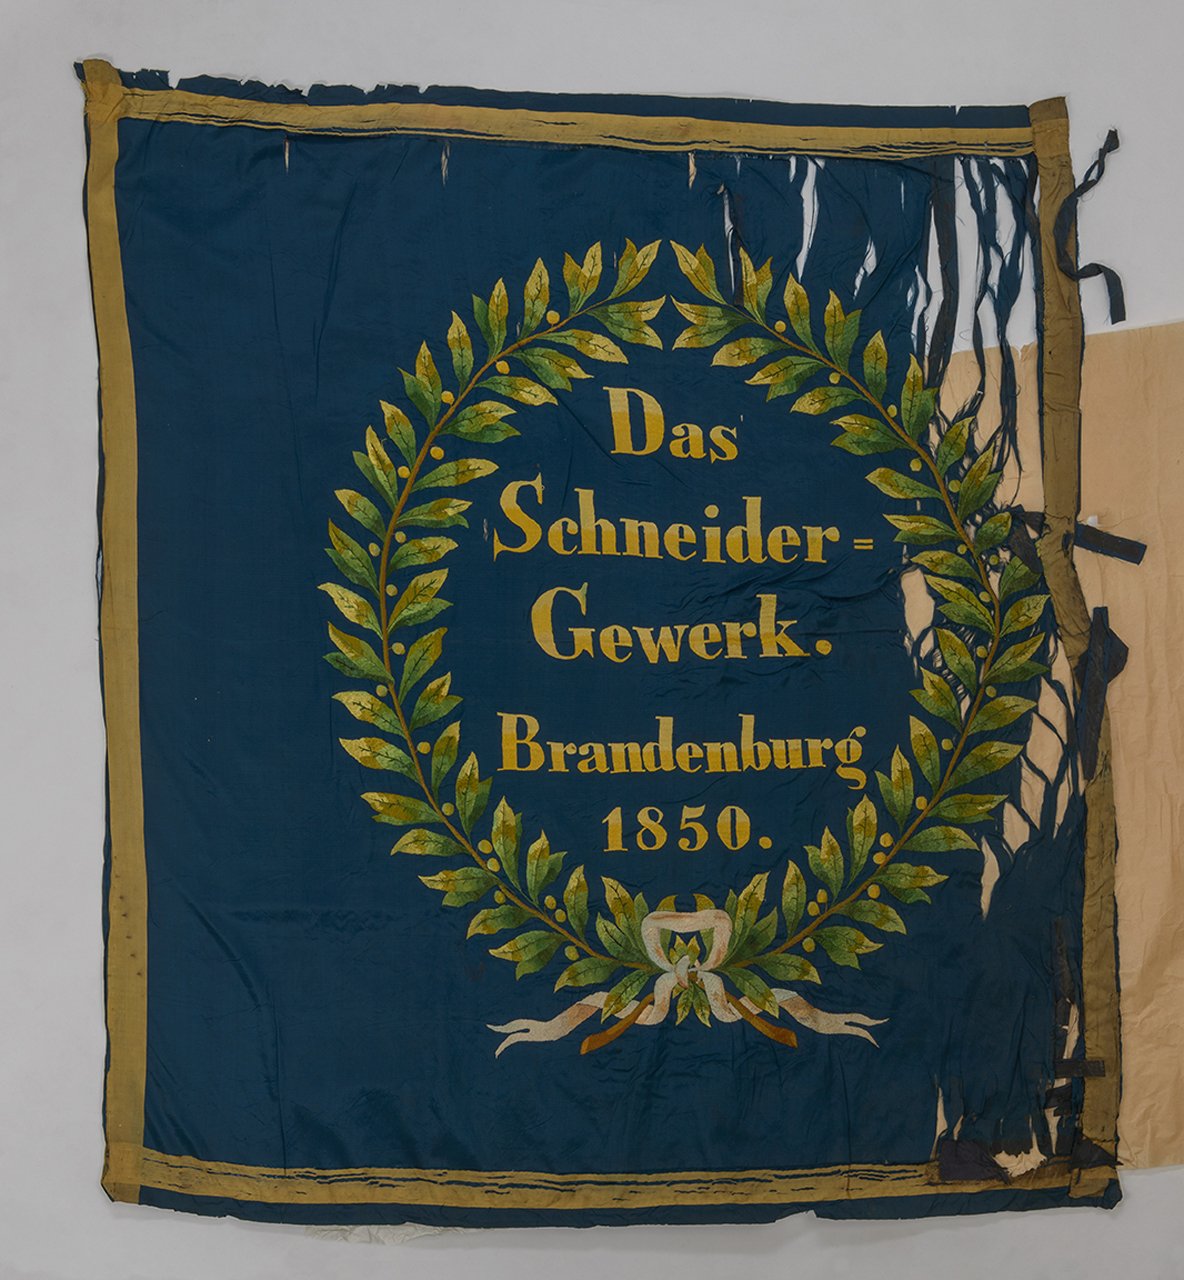 Fahne des Schneidergewerks Brandenburg (Stadtmuseum Brandenburg an der Havel CC BY-NC-SA)